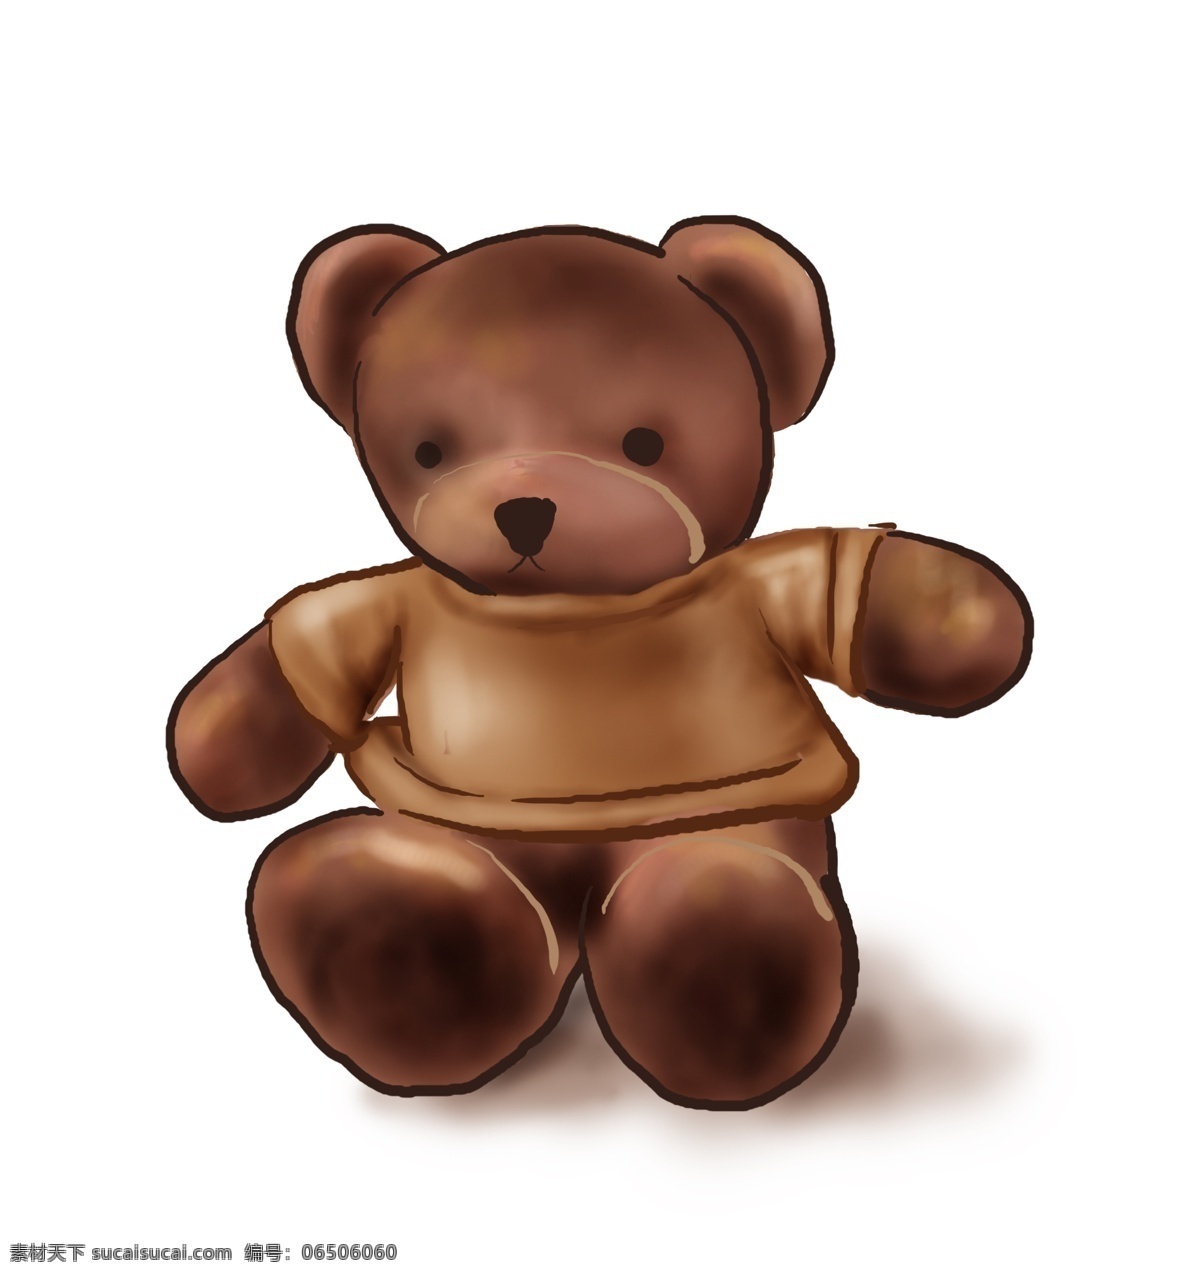 手绘 玩具 棕色 小 熊 儿童节 儿童 小熊 游乐场 节日 游戏 小朋友 动物 幼儿园 小孩